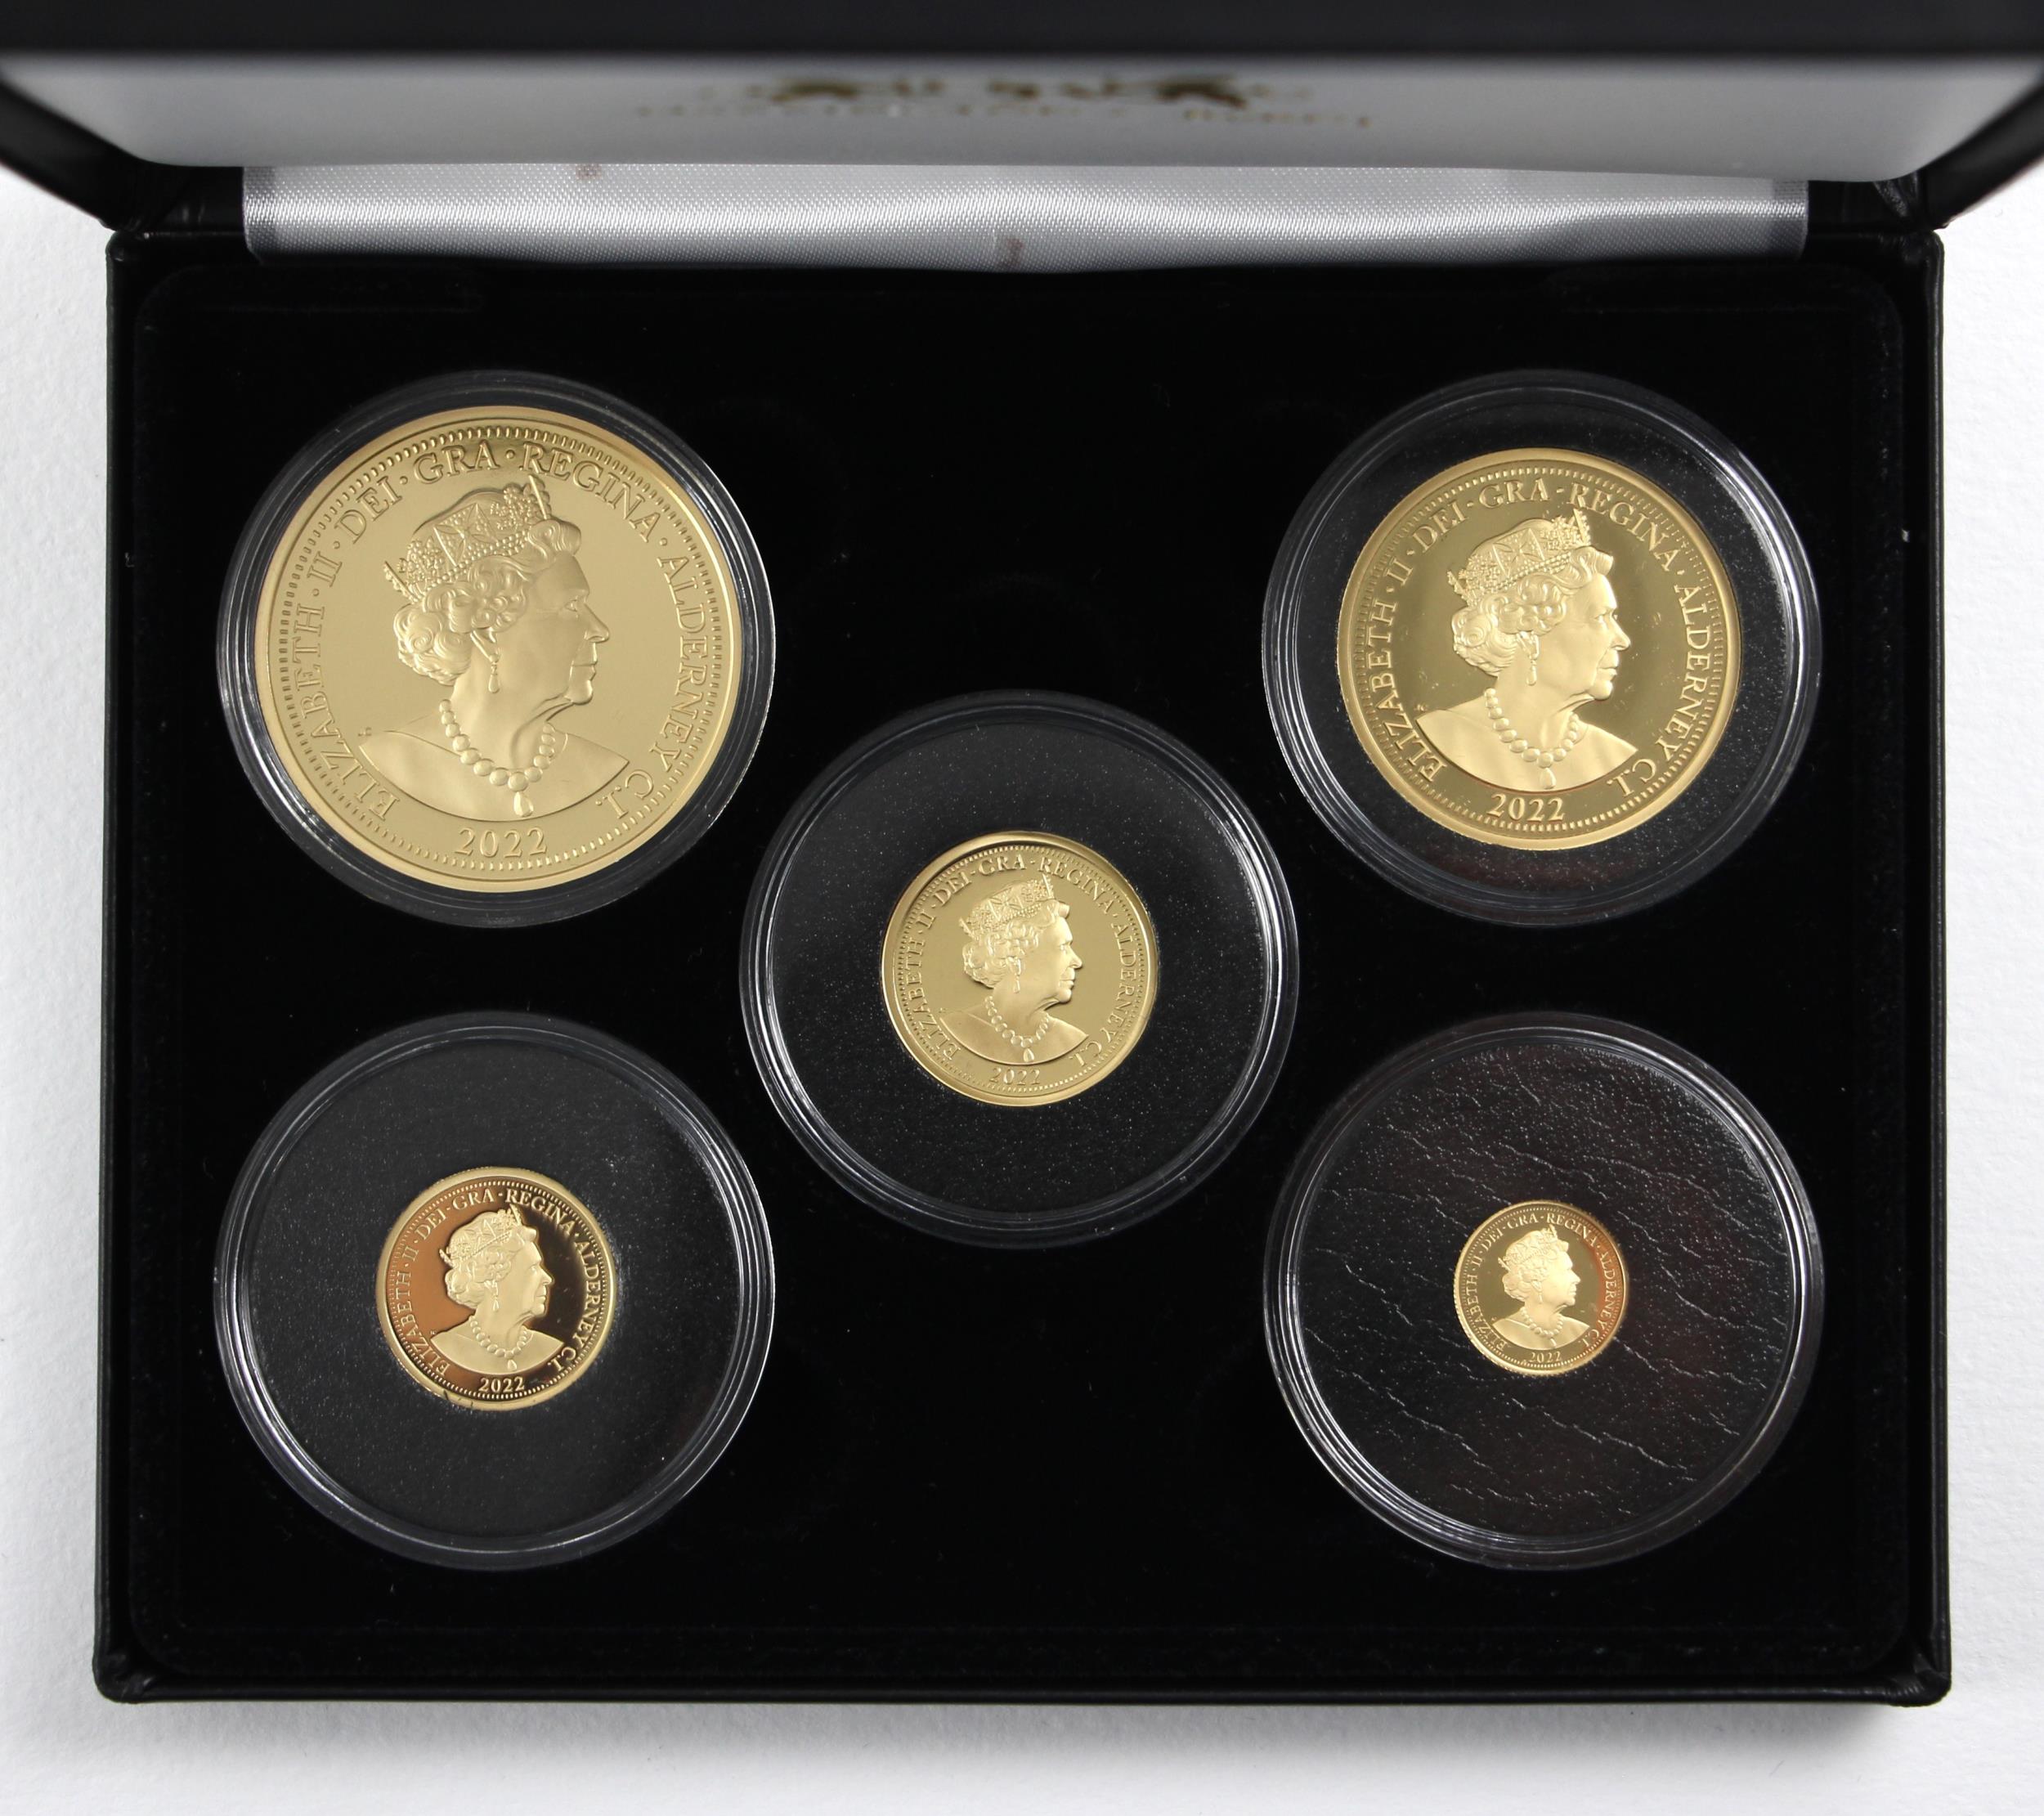 Elizabeth II (1952-2022), Platinum Jubilee of Queen Elizabeth II Gold Proof Five Coin Sovereign